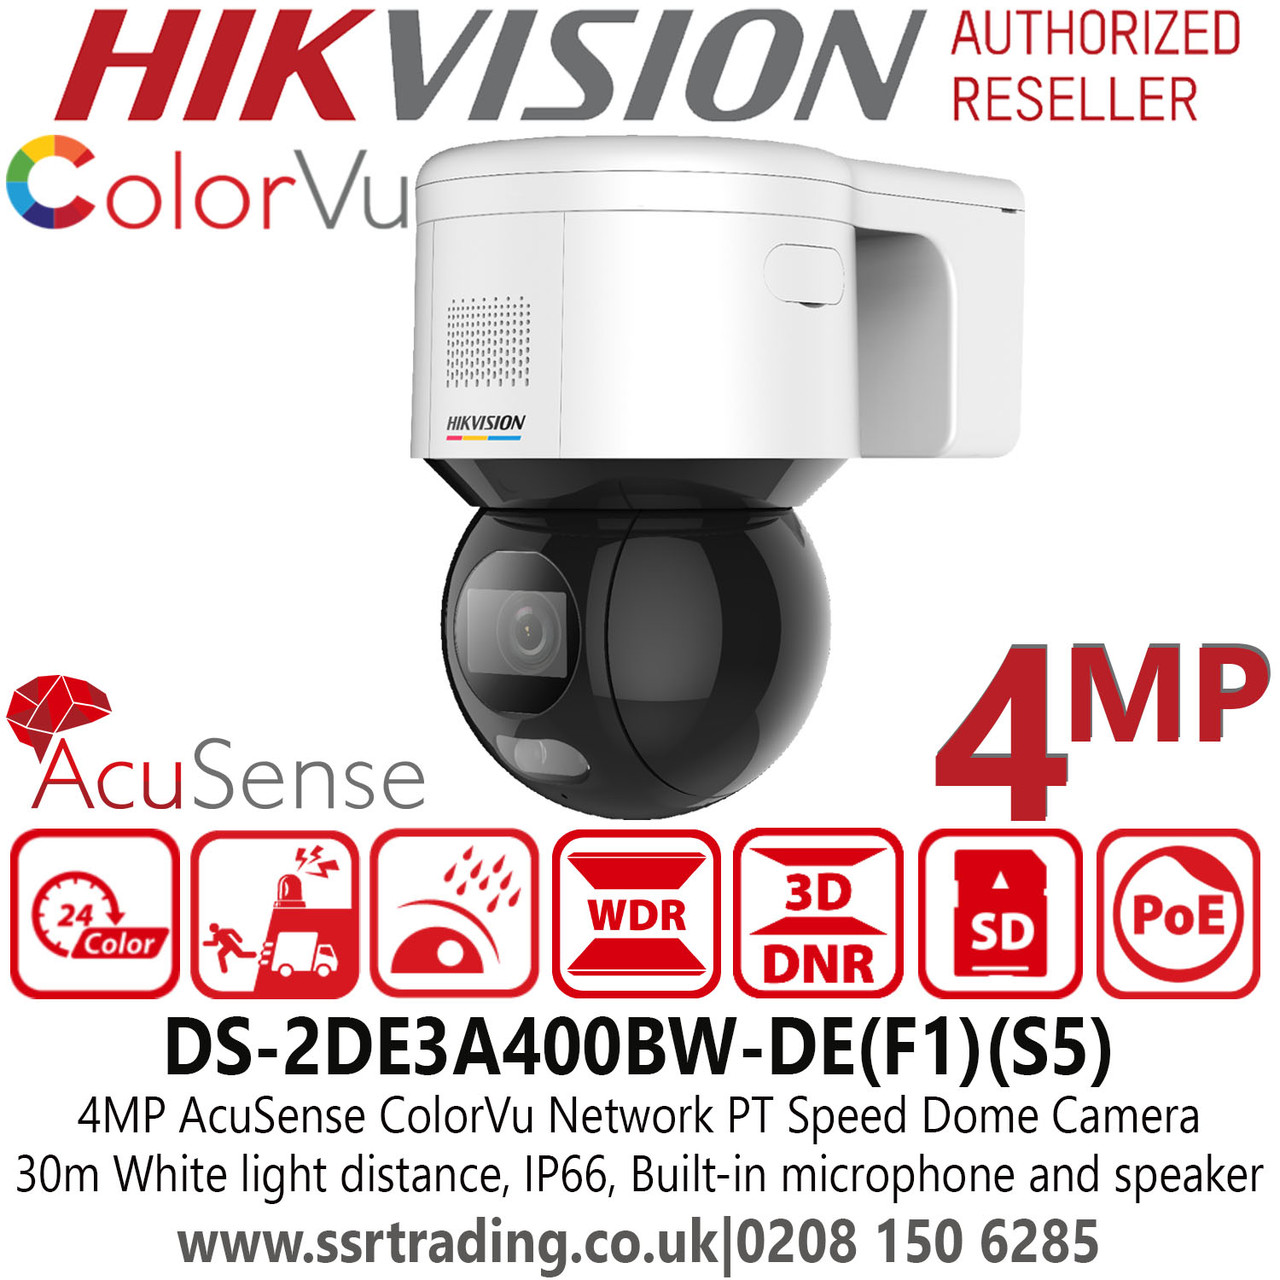 Hikvision 4mp 4mm Fixed Lens Acusense Colour Pt Ip Poe Network Cctv Camera 30m White Light Range Ds 2de3a400bw De F1 S5